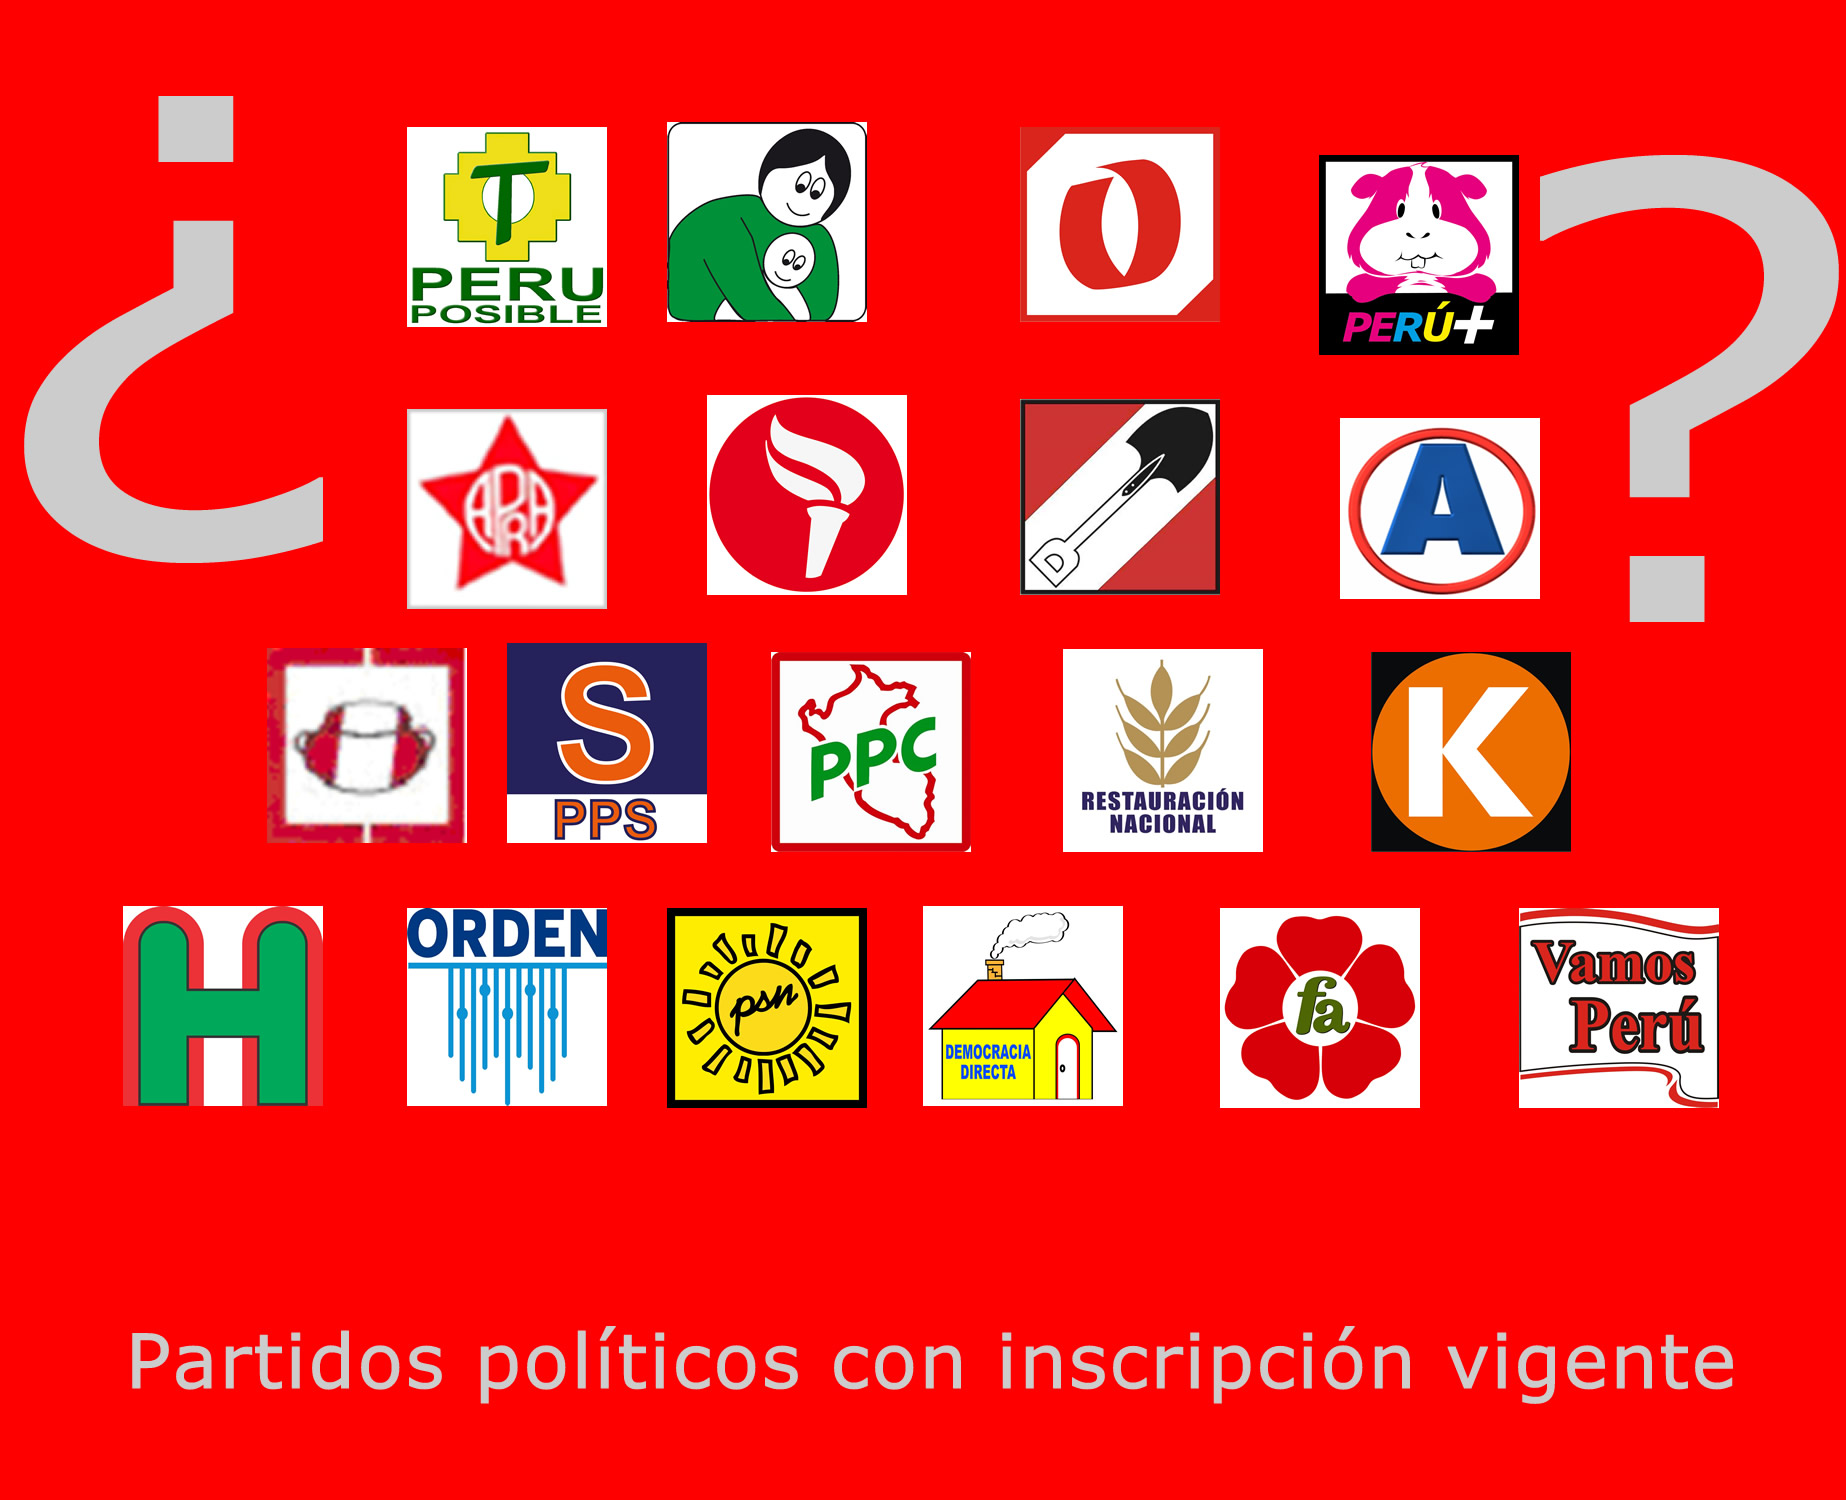 Partidos politicos peruanos